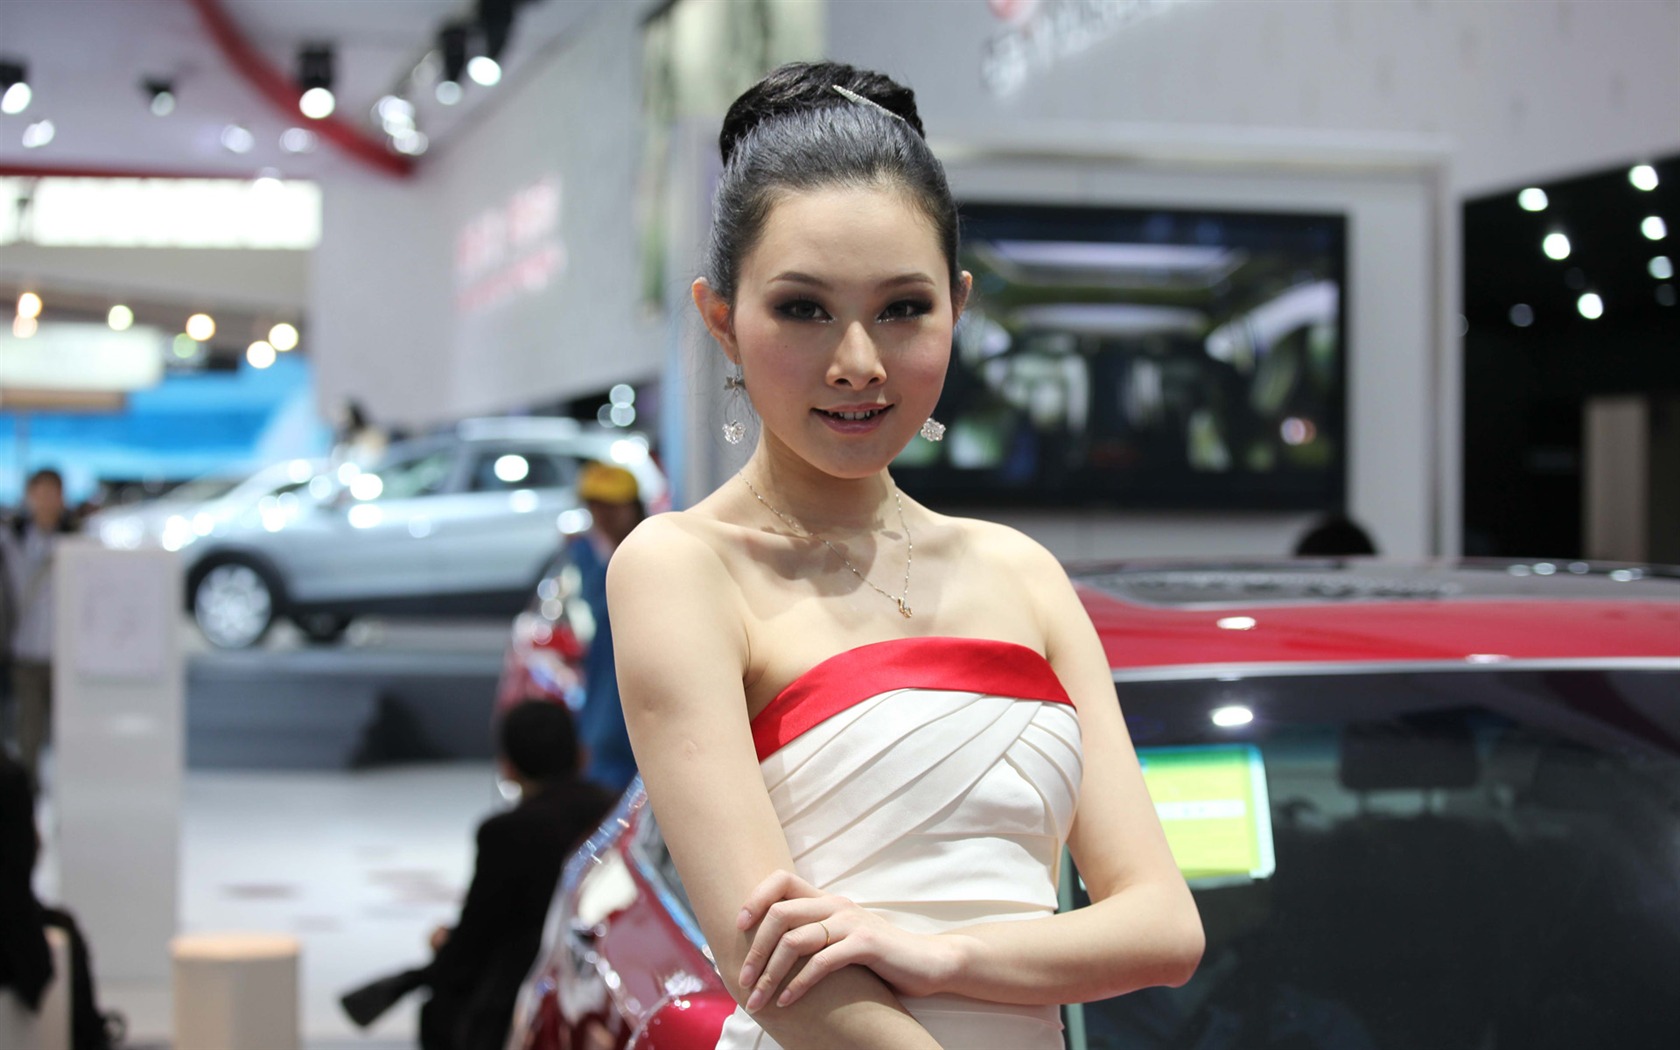 2010 v Pekingu Mezinárodním autosalonu krása (2) (vítr honí mraky práce) #39 - 1680x1050